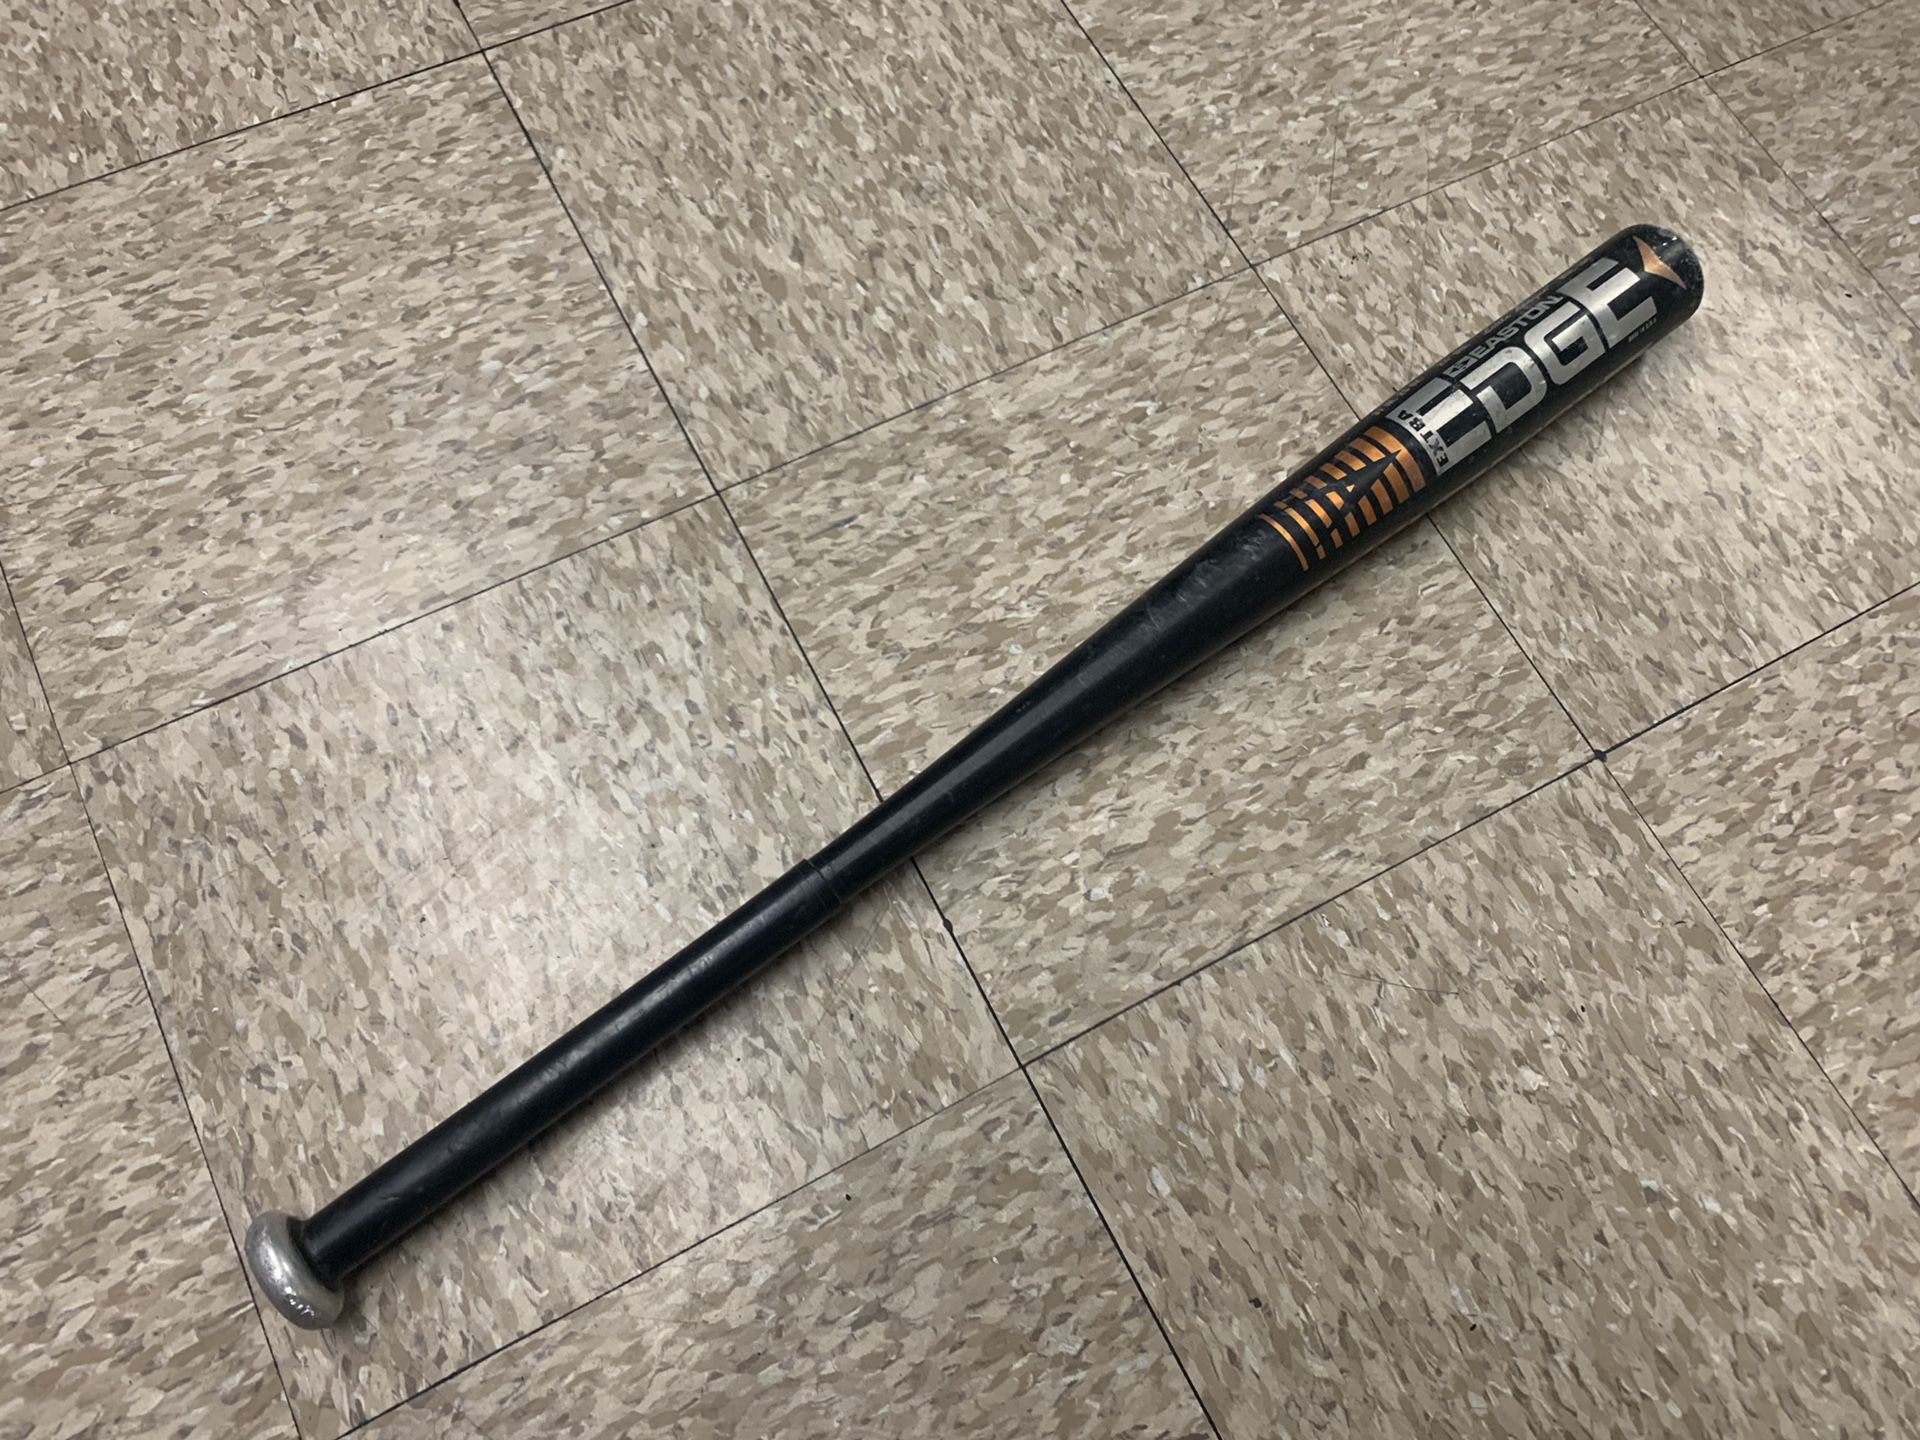 Easton extra edge bat 31”